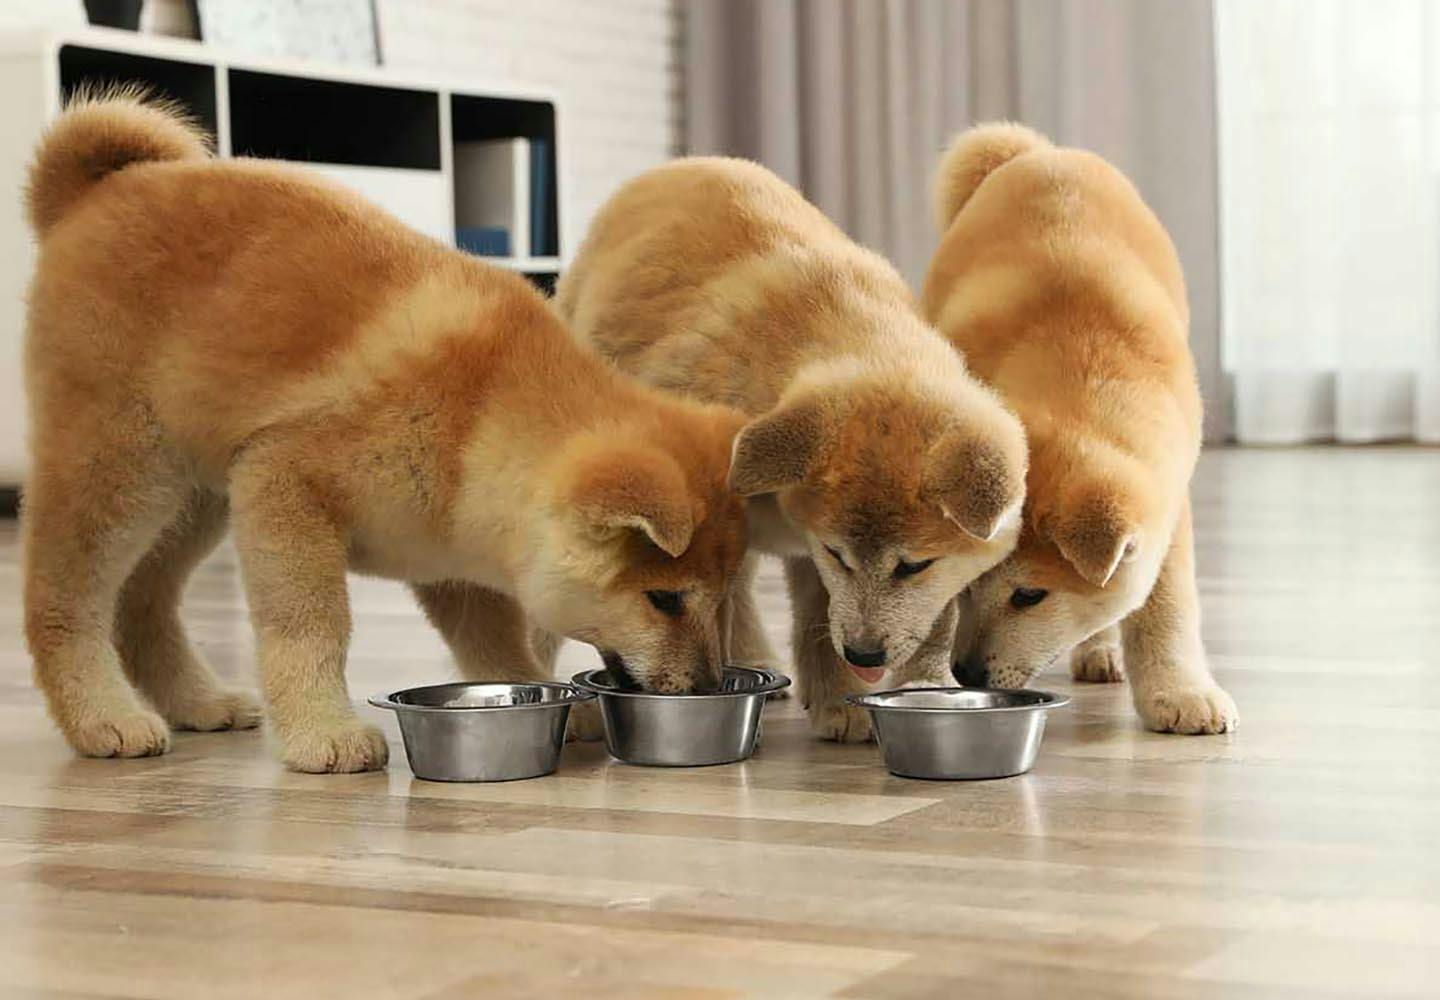 獣医師監修 犬に手作りご飯を与えるメリット デメリットとは 調理するときの注意点やおすすめの食材 栄養バランスの基礎知識などについて解説 Health 健康 わんクォール